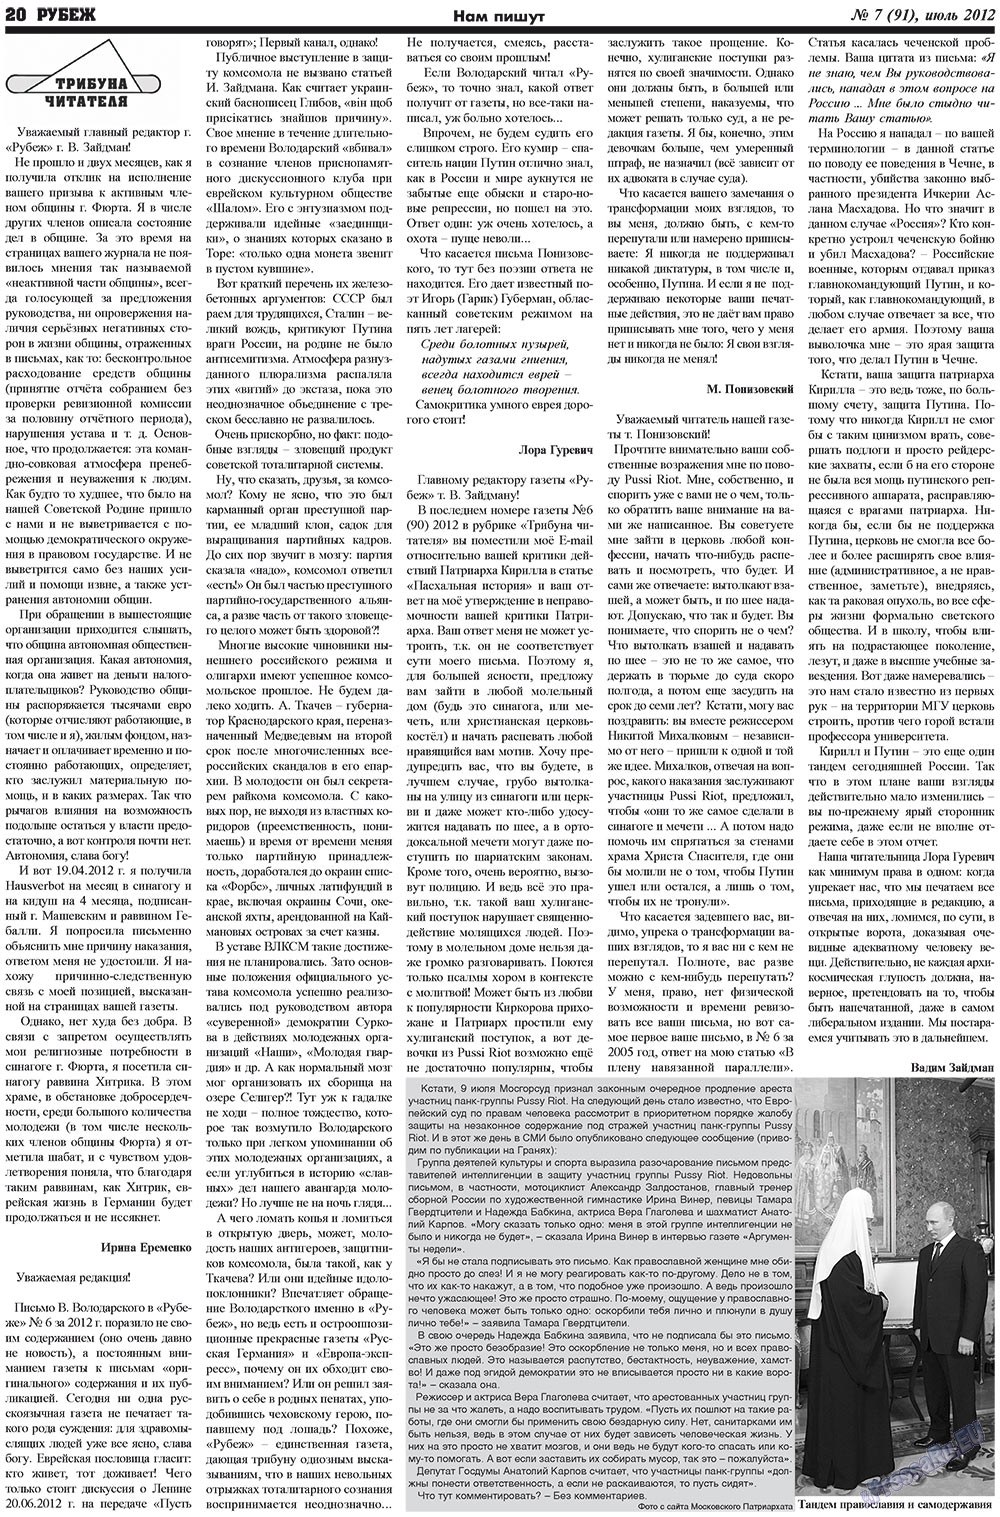 Рубеж (газета). 2012 год, номер 7, стр. 20